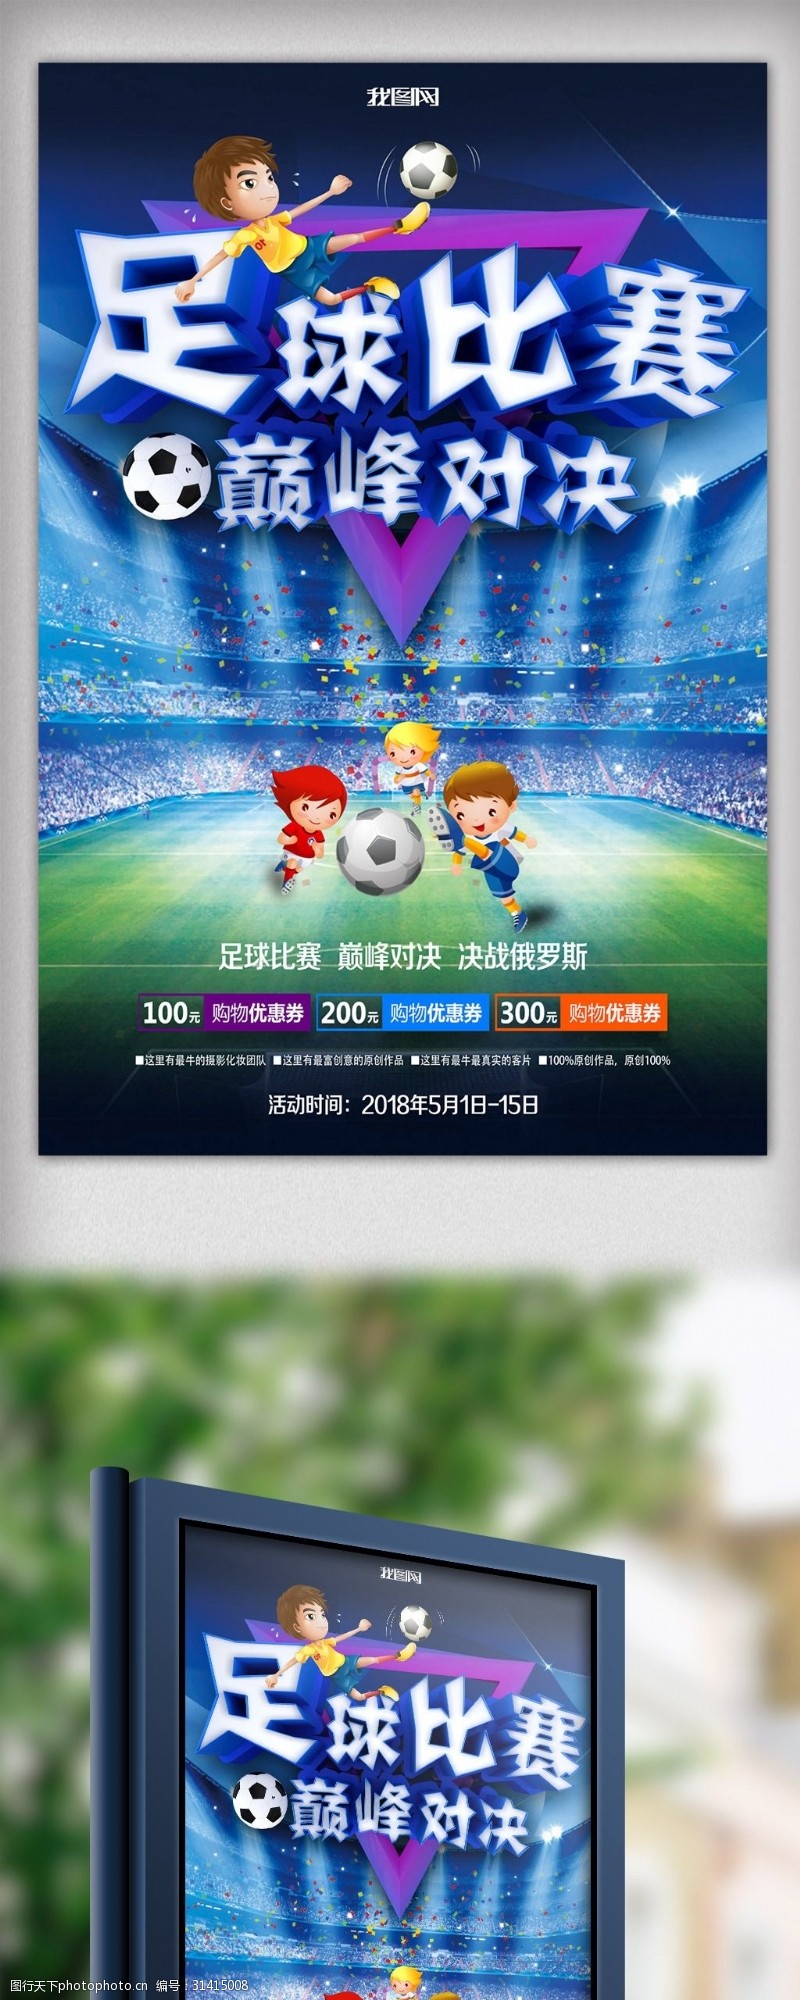 足球比赛奖杯创意立体字足球比赛海报